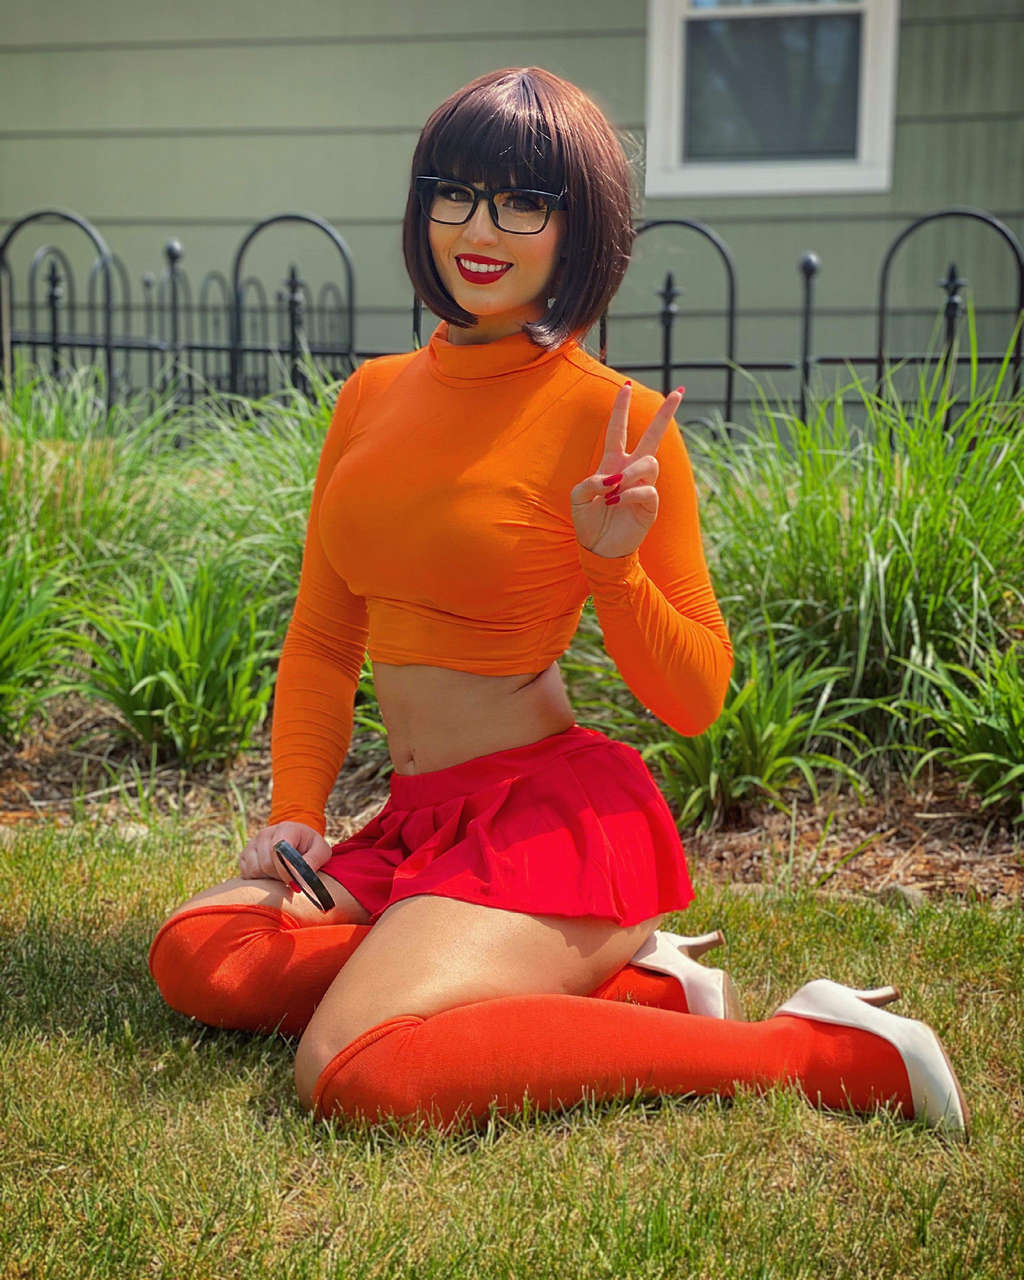 Velma Dinkley By Mademlus